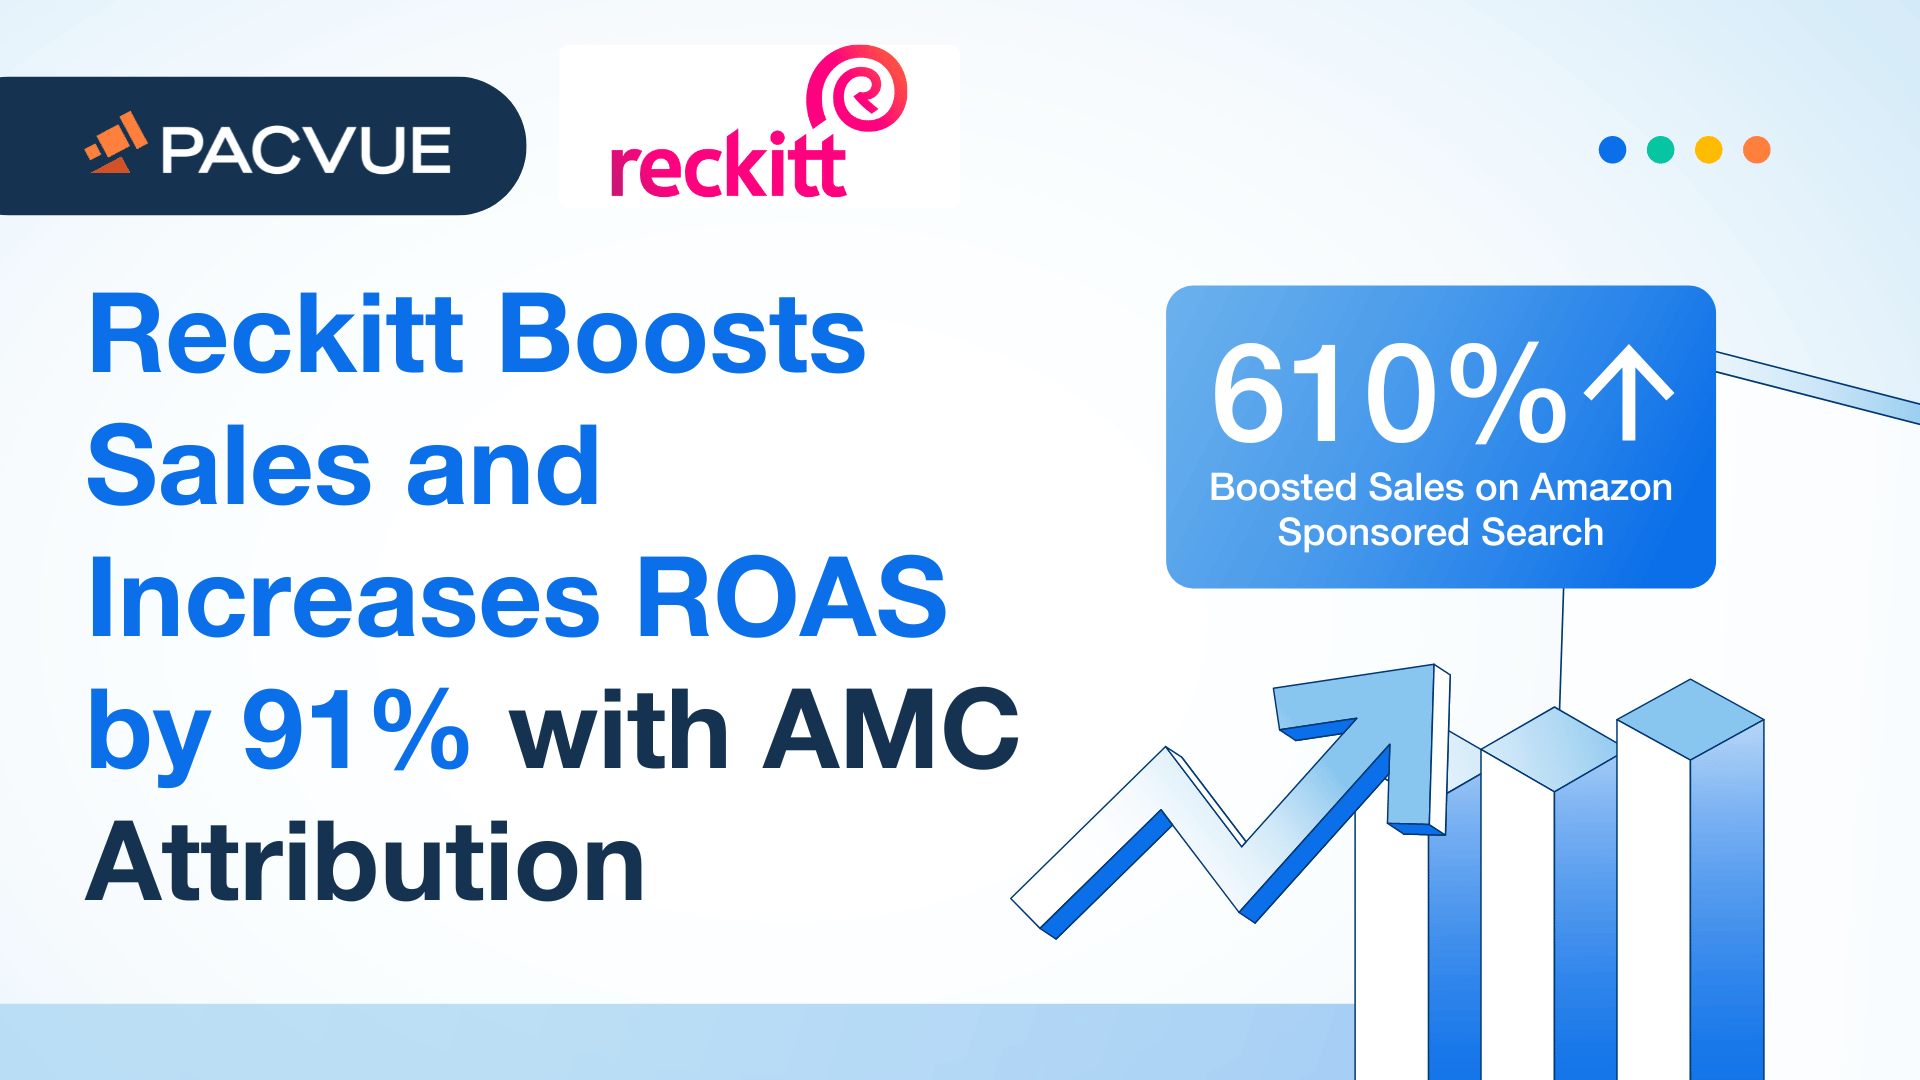 Reckitt steigert den Umsatz und erhöht den ROAS um 91% mit AMC Attribution